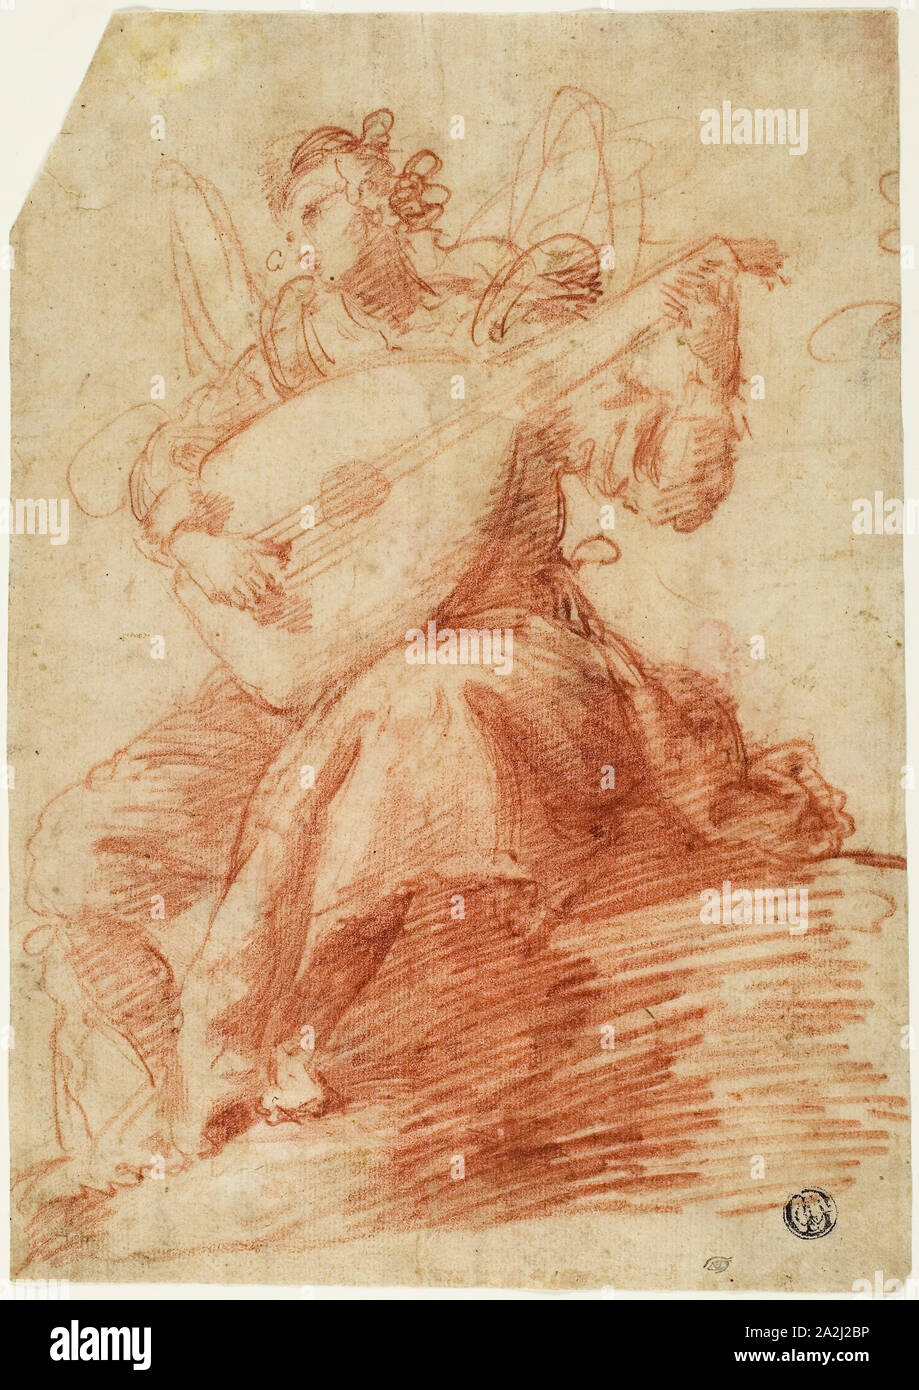 Ange jouant d'un luth, s.d., attribué à Jacopo Confortini (italien, 1602-1672), ou peut-être Giovanni Bilivert (Antonio), Italien (1585-1644), ou peut-être Giovanni Mannozzi (italien, 1592-1636), l'Italie, craie rouge, sur papier vergé chamois, fixées sur papier vélin ivoire, 244 × 171 mm Banque D'Images